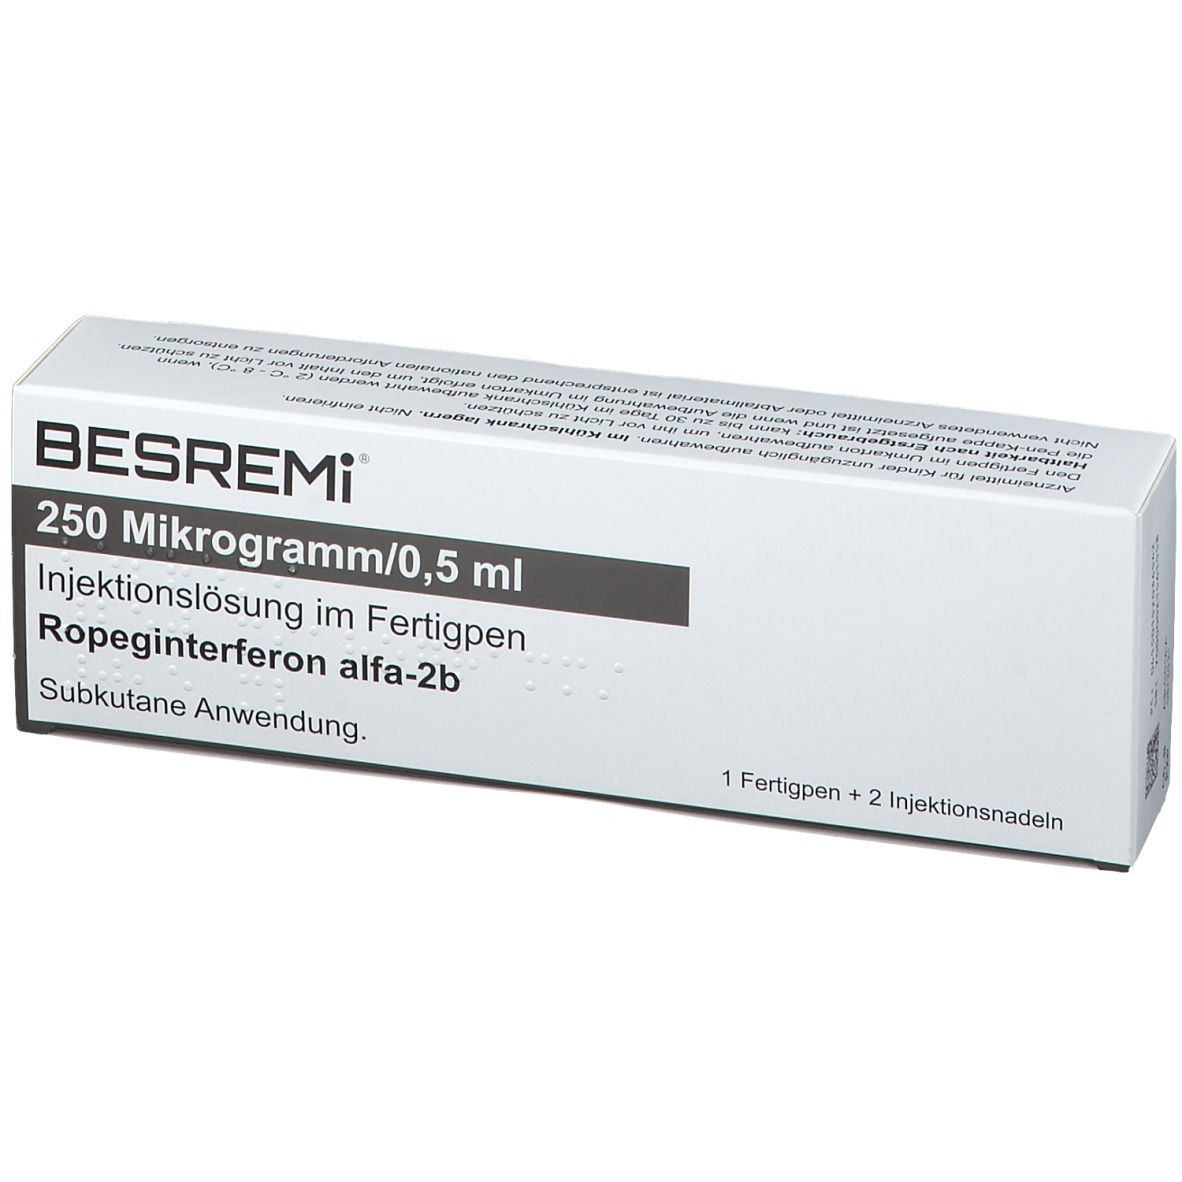 在哪可以买到Besremi（长效干扰素α-2b 注射剂）？